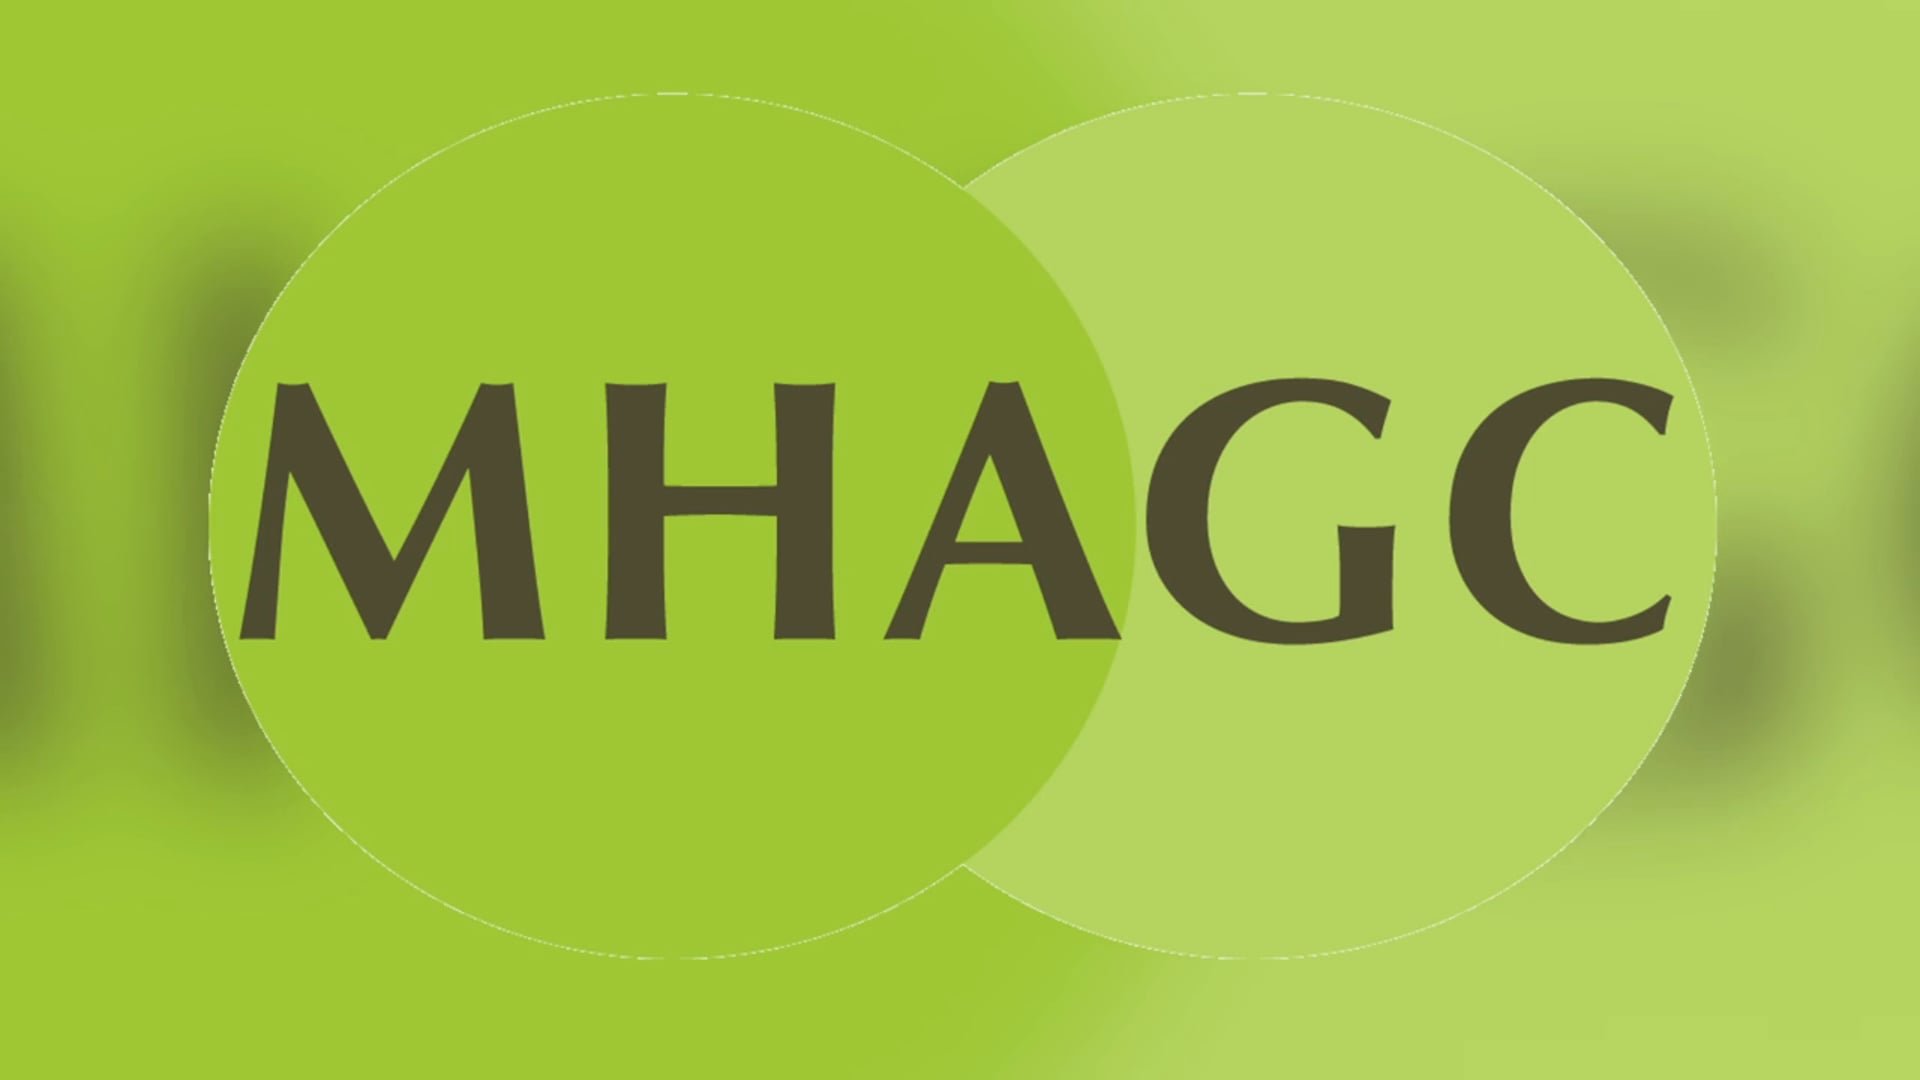 MHAGC | About Us